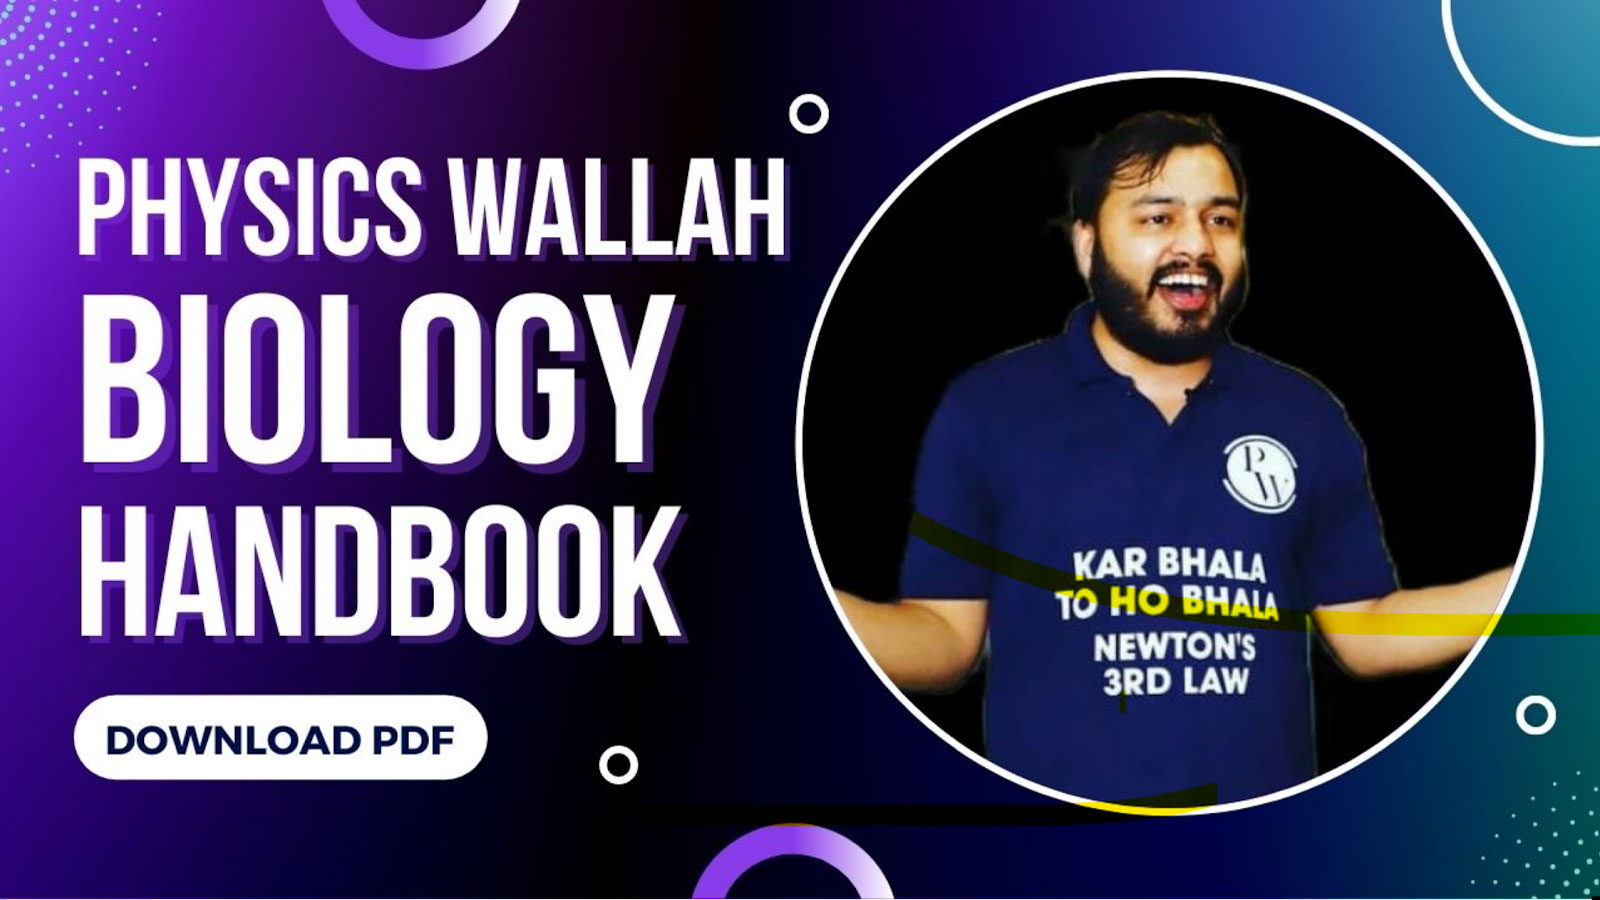 Physics Wallah Biology Handbook PDF Download 